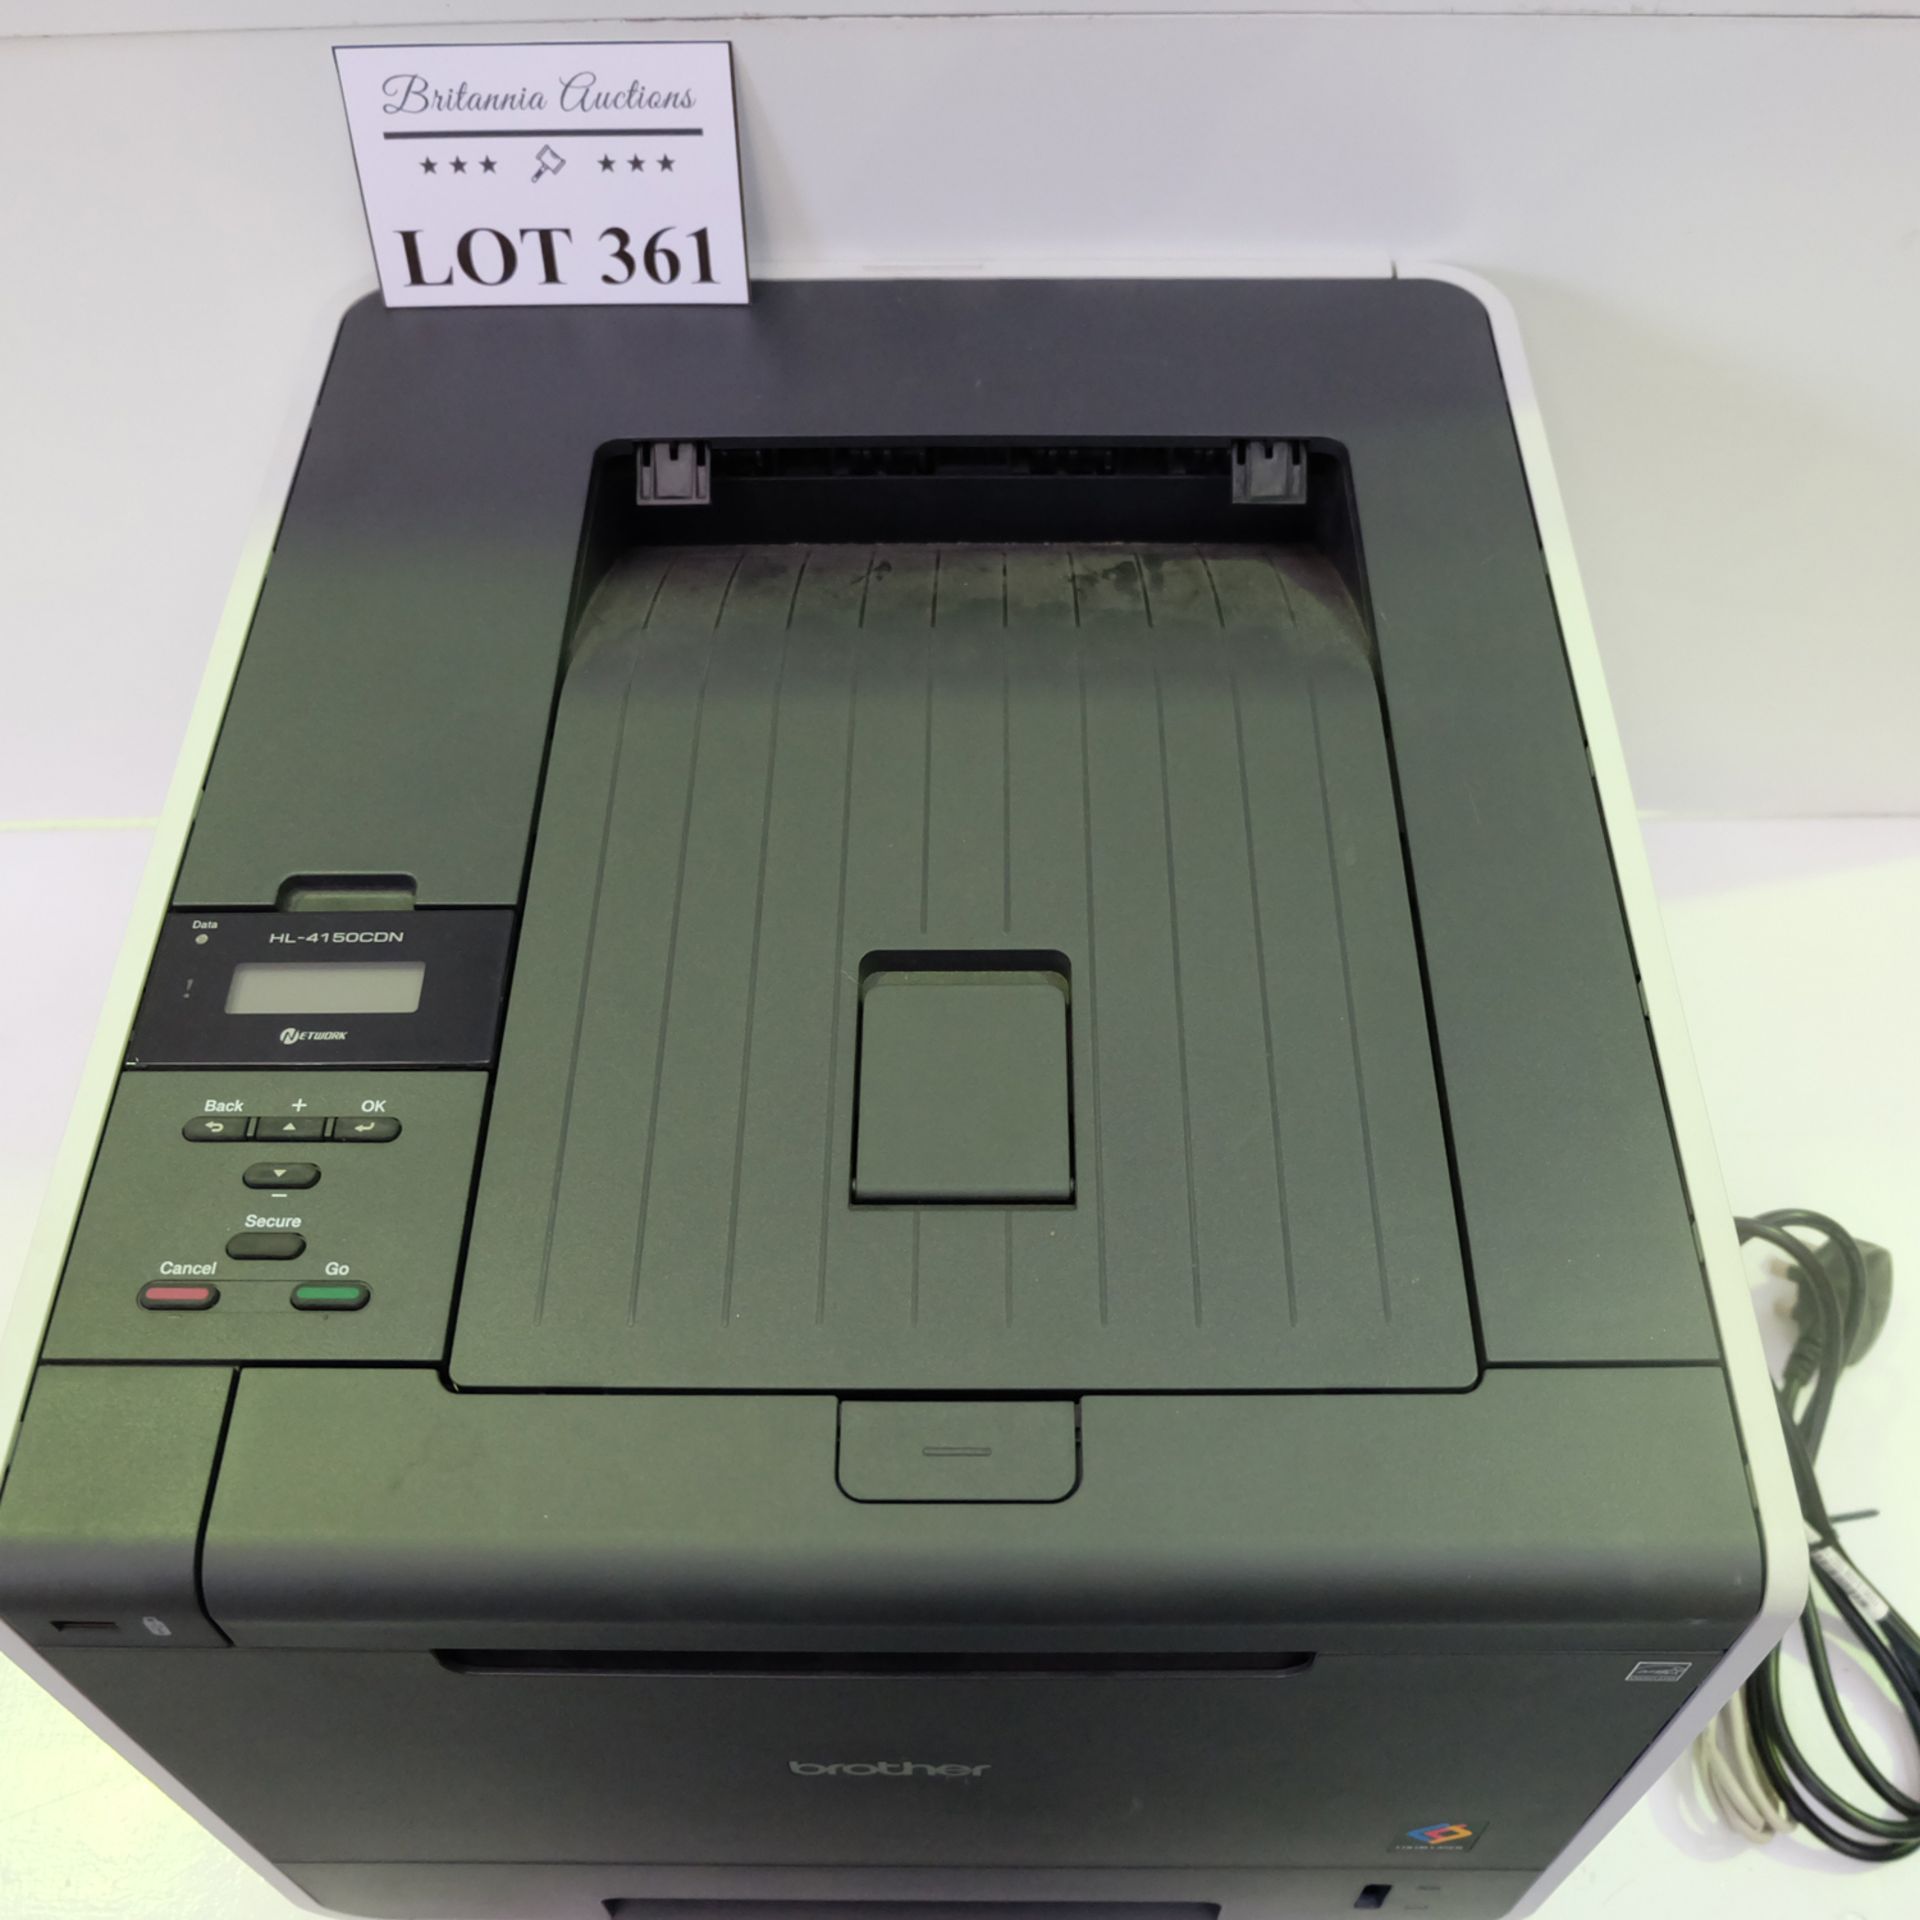 Brother Model HL-4150CDN Colour Laser Printer. - Image 2 of 8